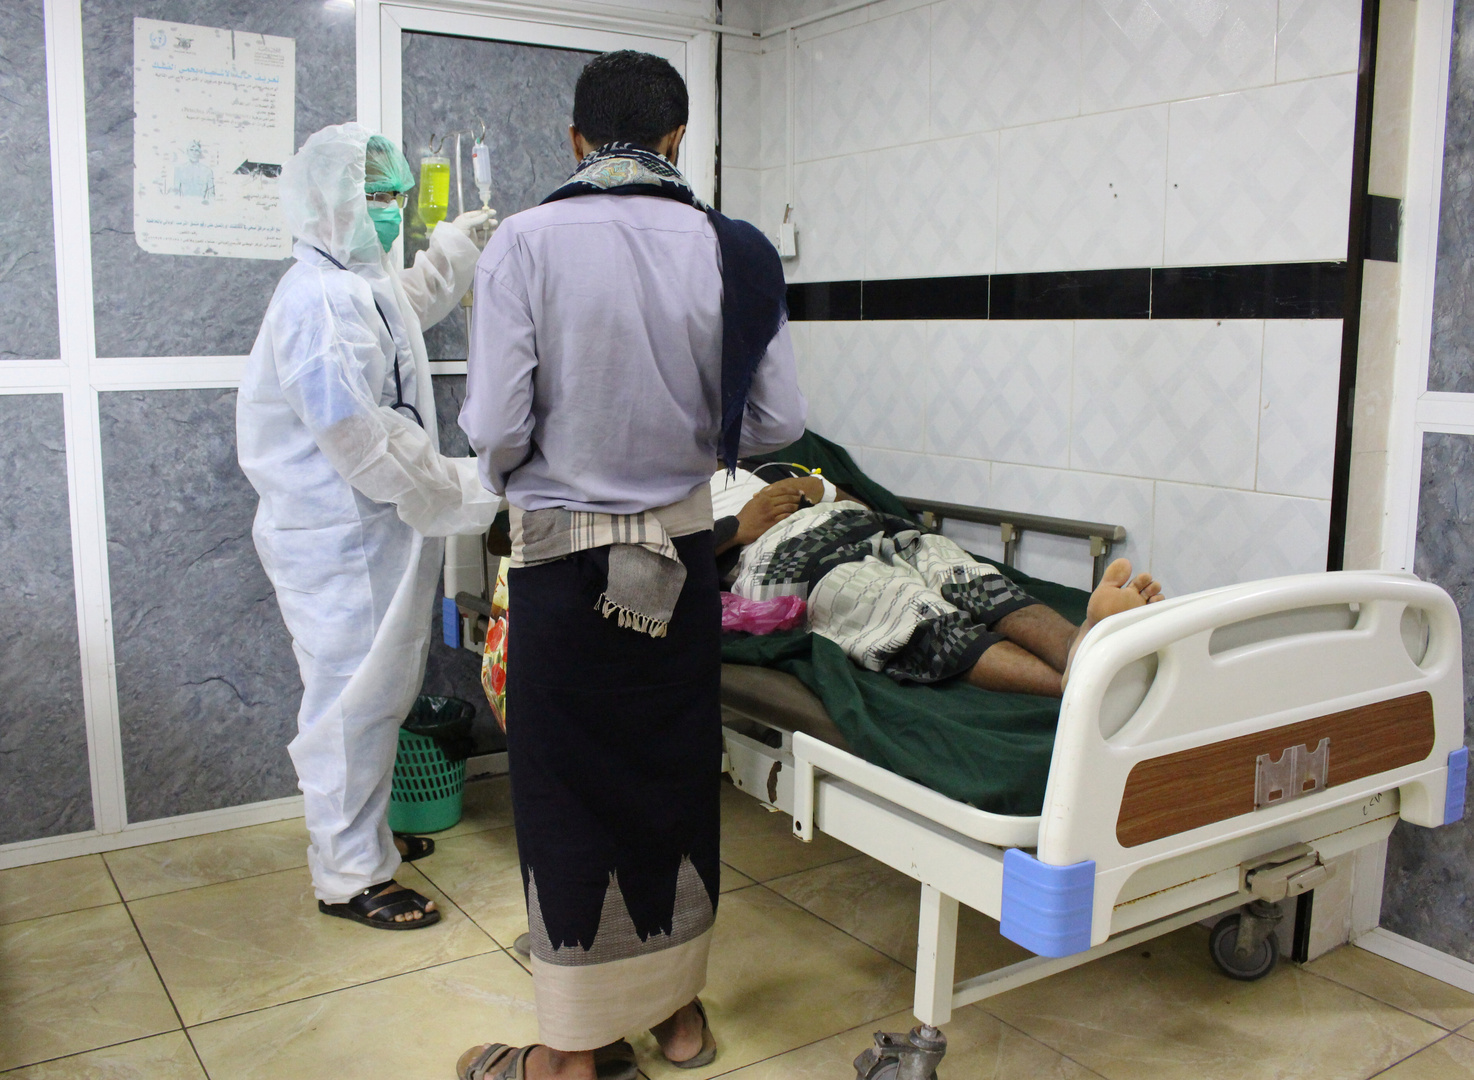 غوتيريش: أعلى نسبة وفيات كورونا عالميا في عدن اليمنية